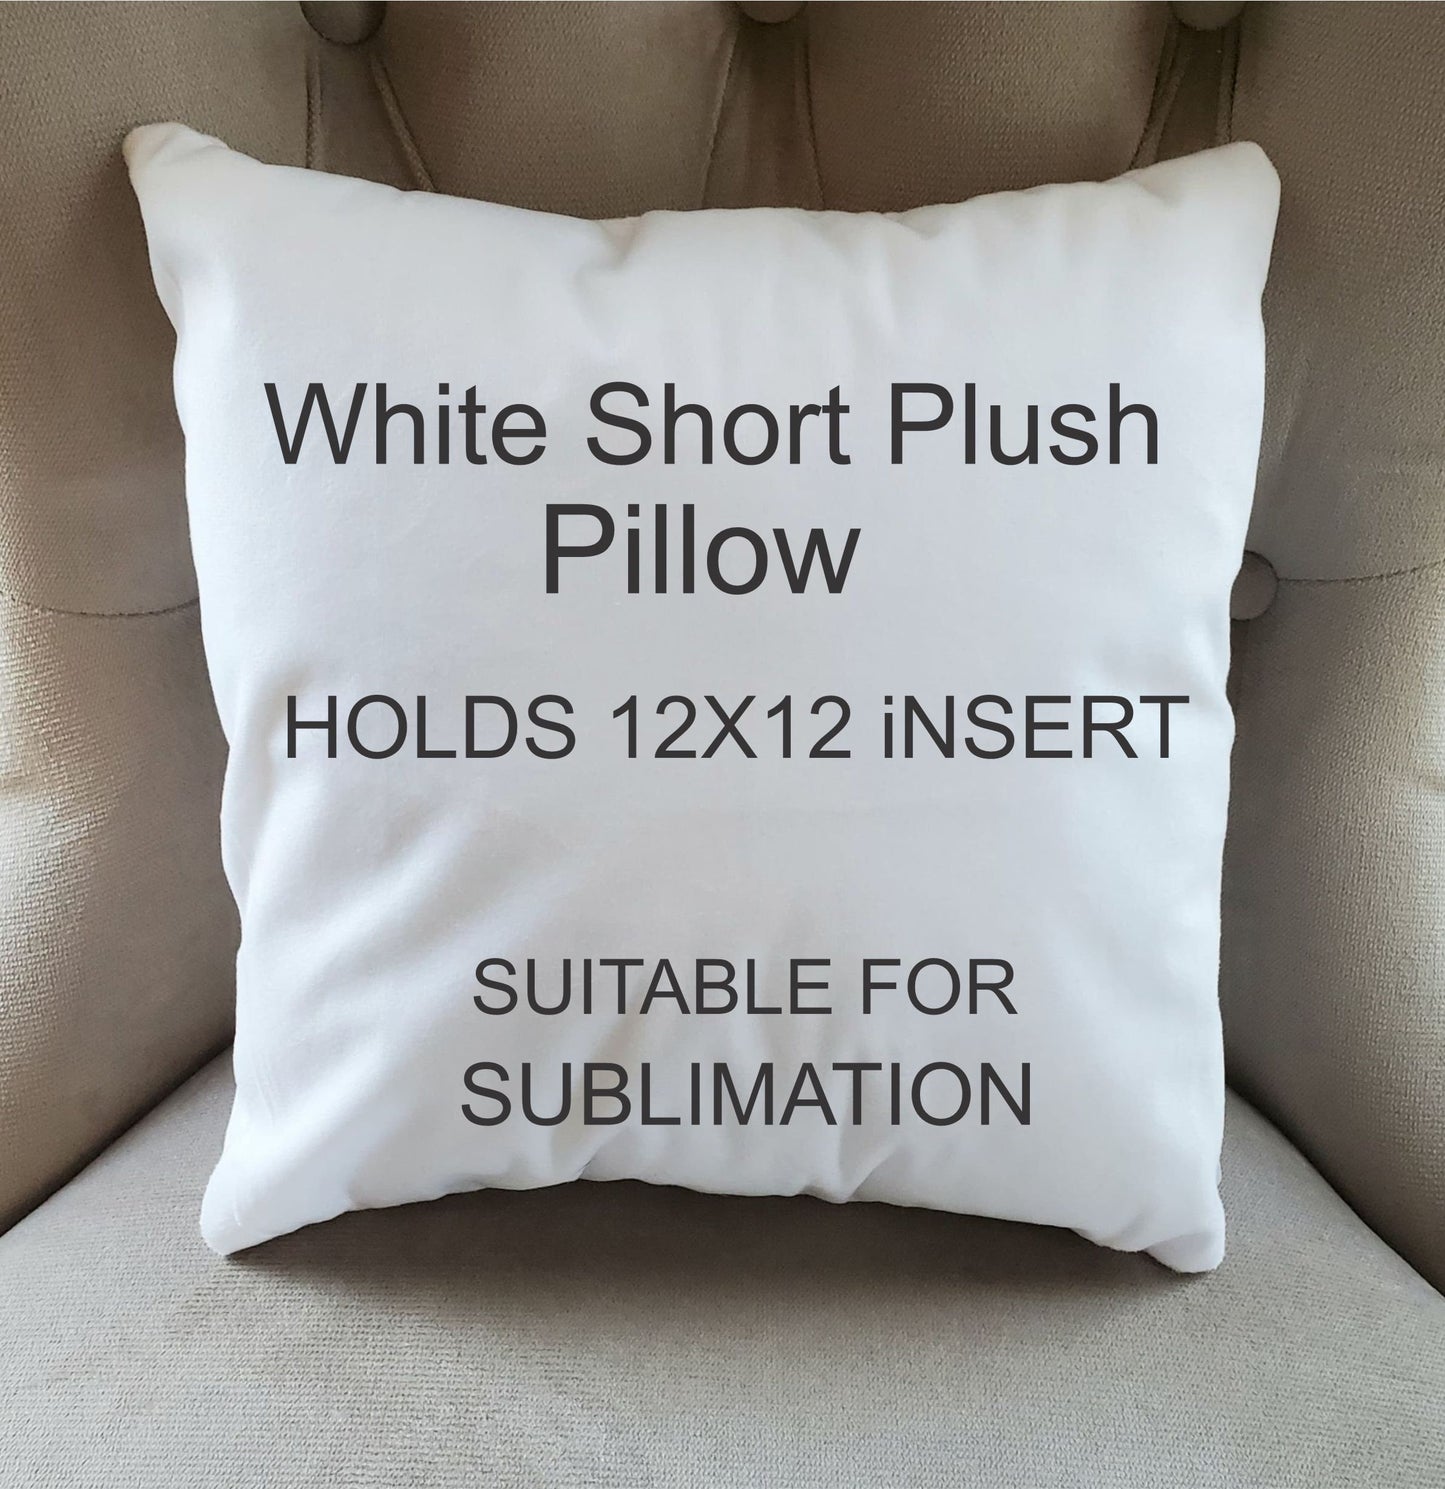 Velvet Pillow Cover/ Super Soft Pillow Cover/ Sublimation Pillow Cover/  Blank Pillow Cover/ Polyester Plush Pillow Cover/ Holds 12x12 Insert 